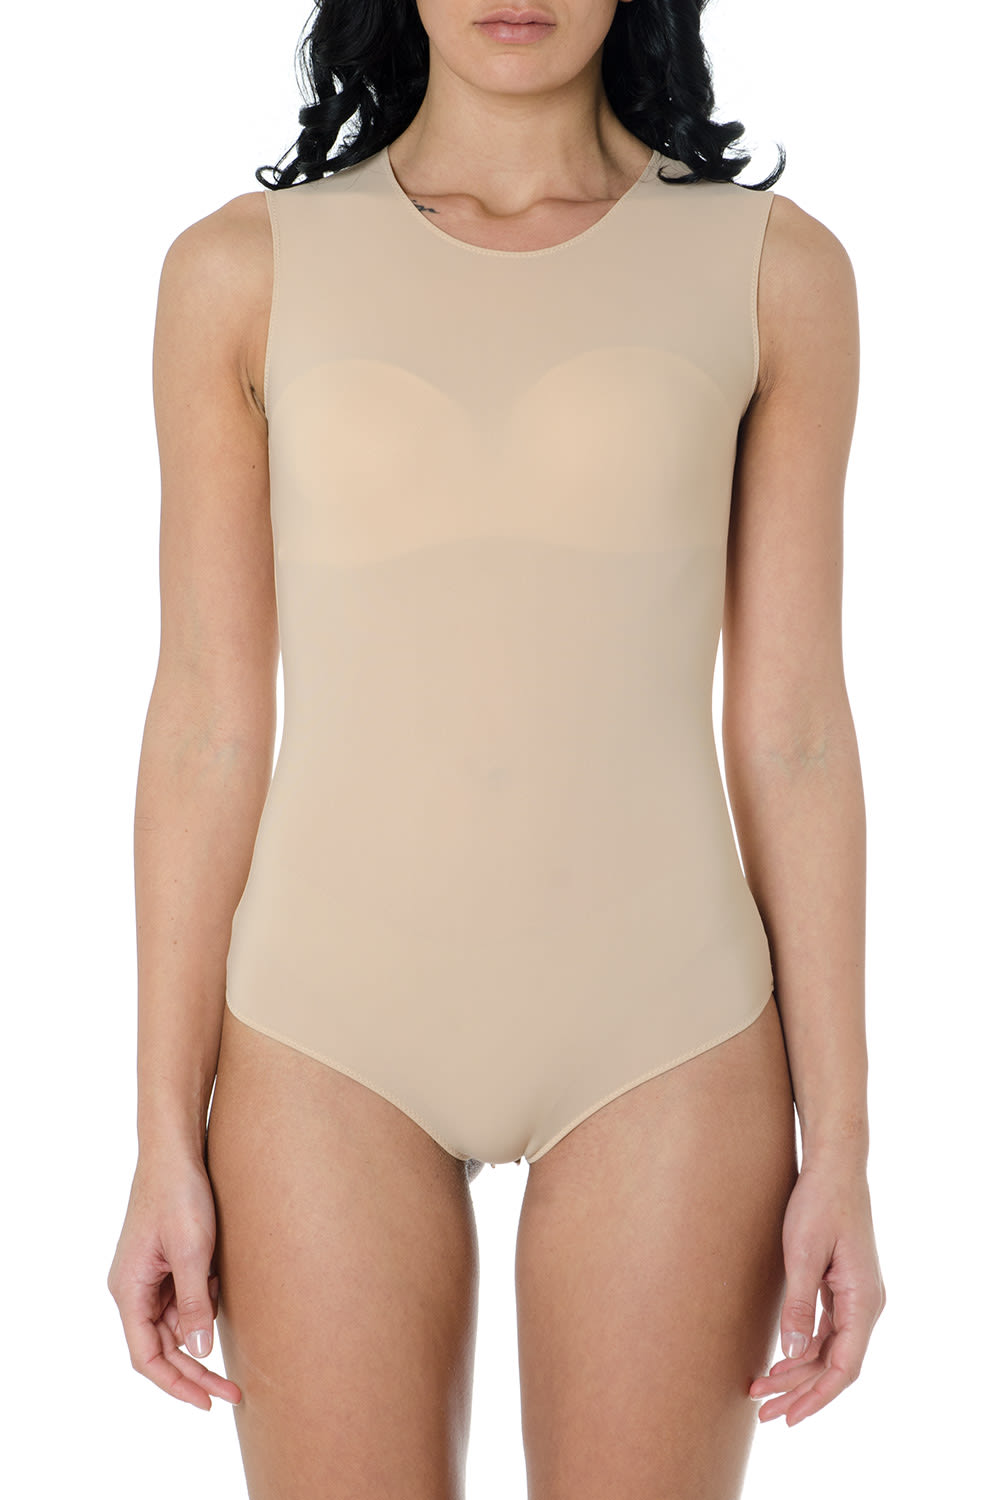 Katie Anderson Nude Pics Desnudo Color Bodysuit